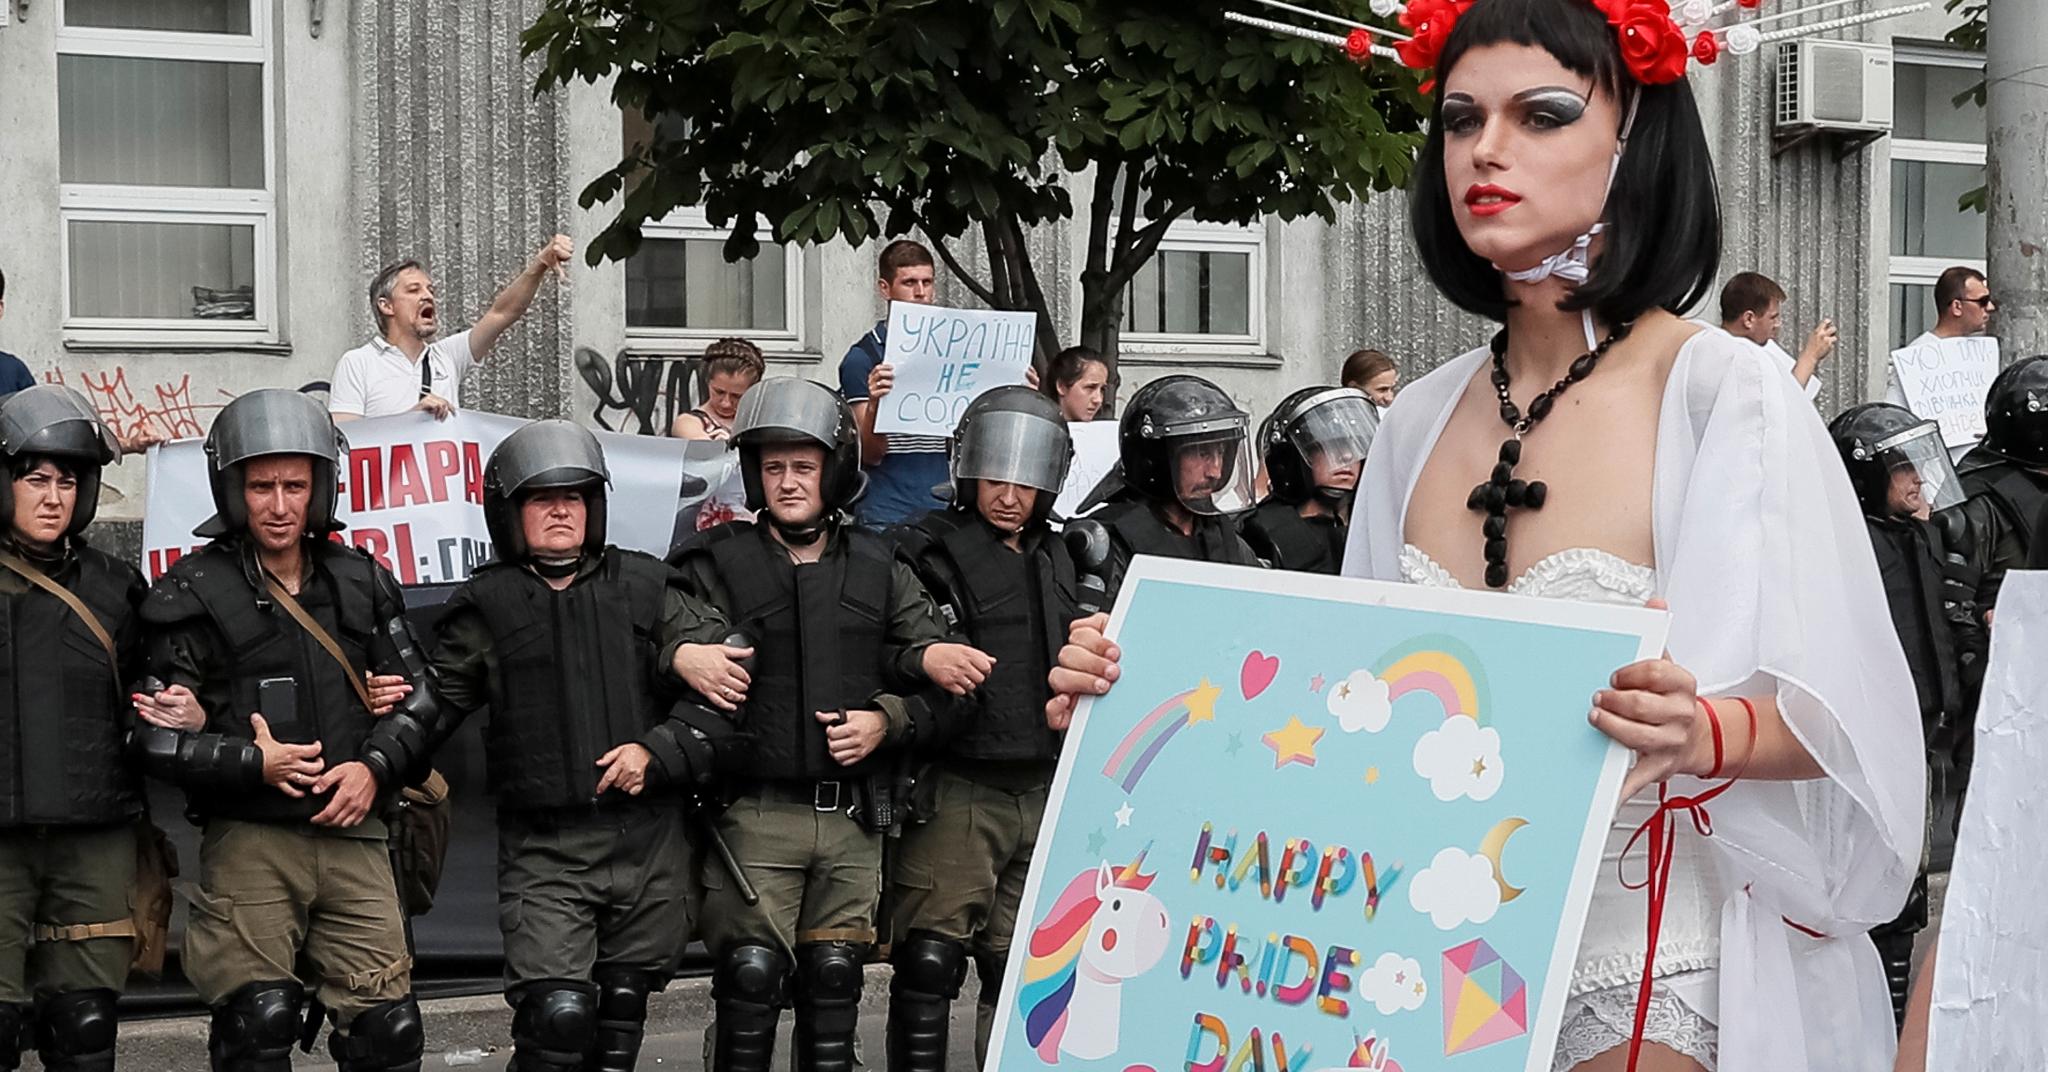 En deltager i Pride-paraden i Ukrainas hovedstad Kiev, der et stort politioppbud fikk skryt for å ha lagt ned en innsats for å beskytte homofile aktivister.